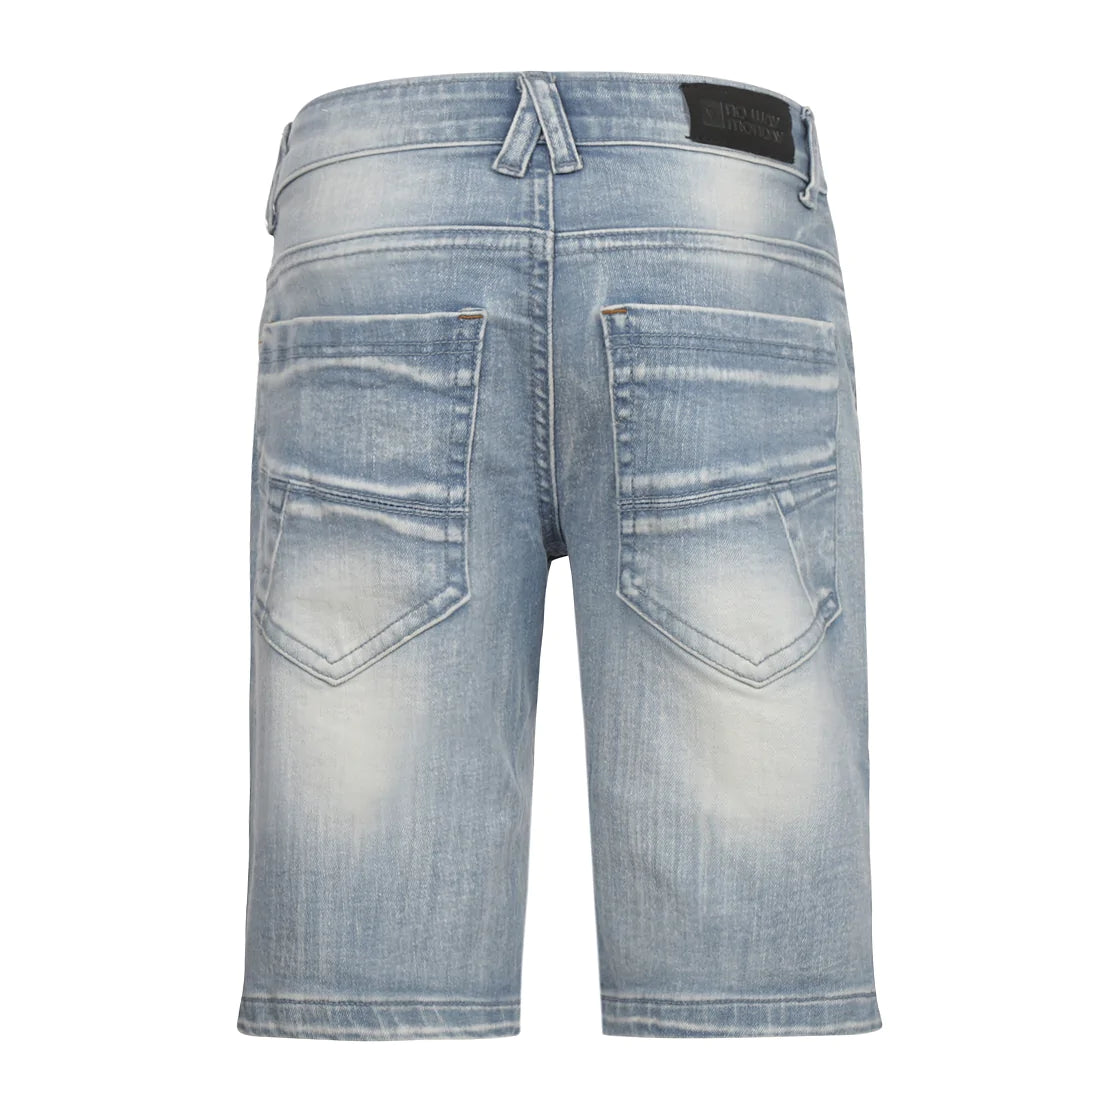 Jongens Jeans shorts Regular van No Way Monday in de kleur Blue jeans in maat 164.